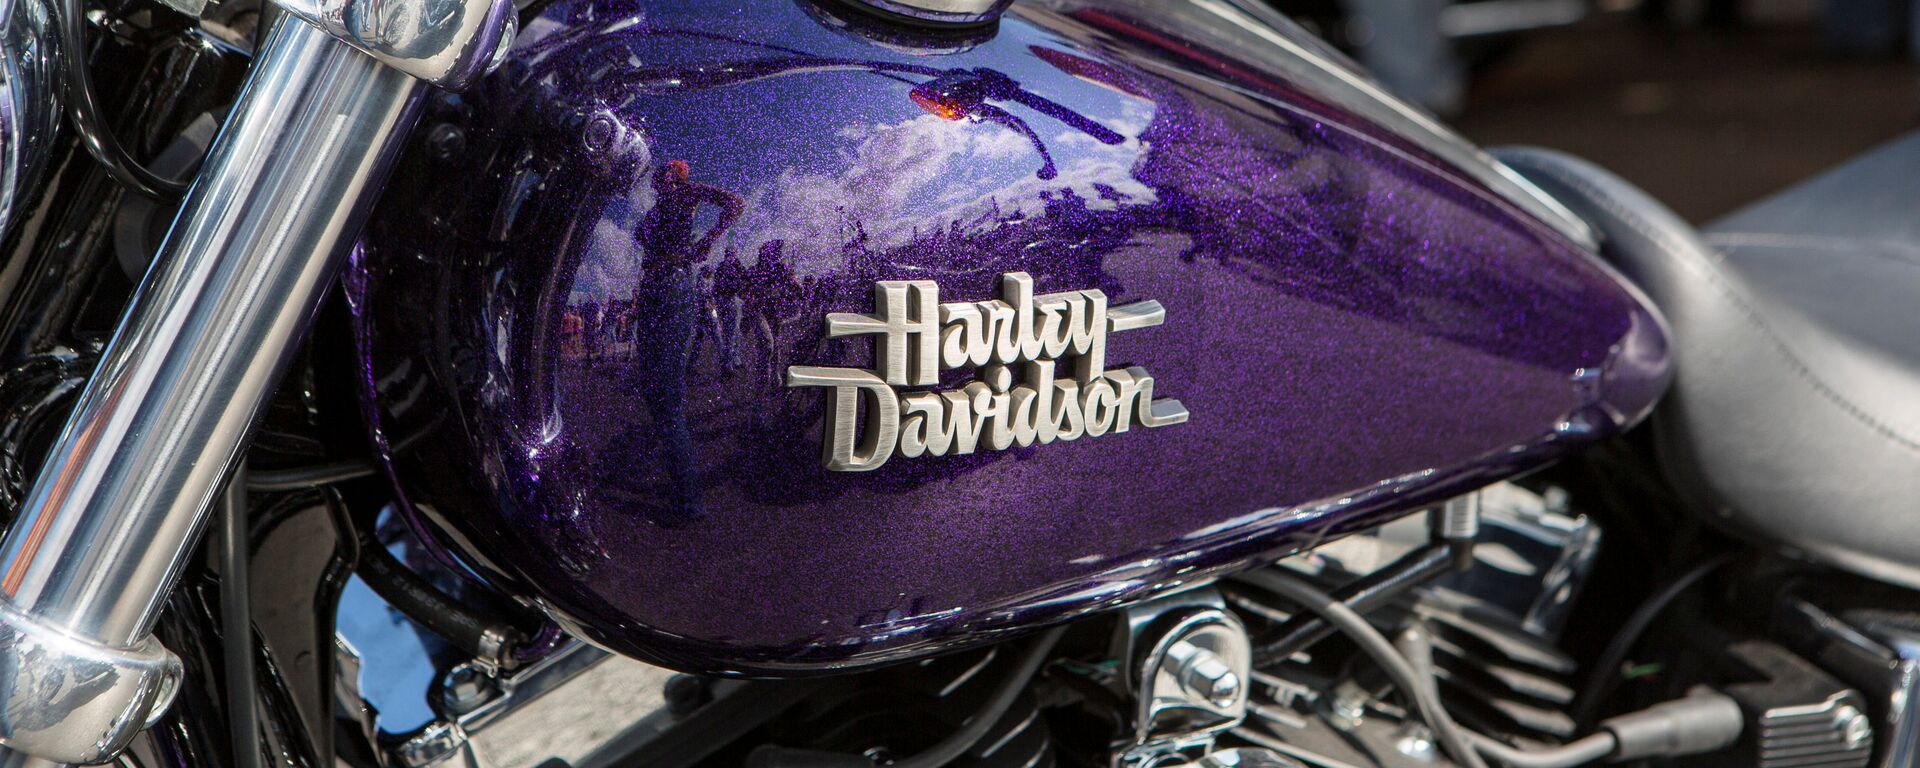 Harley- Davidson - Sputnik Türkiye, 1920, 26.06.2018